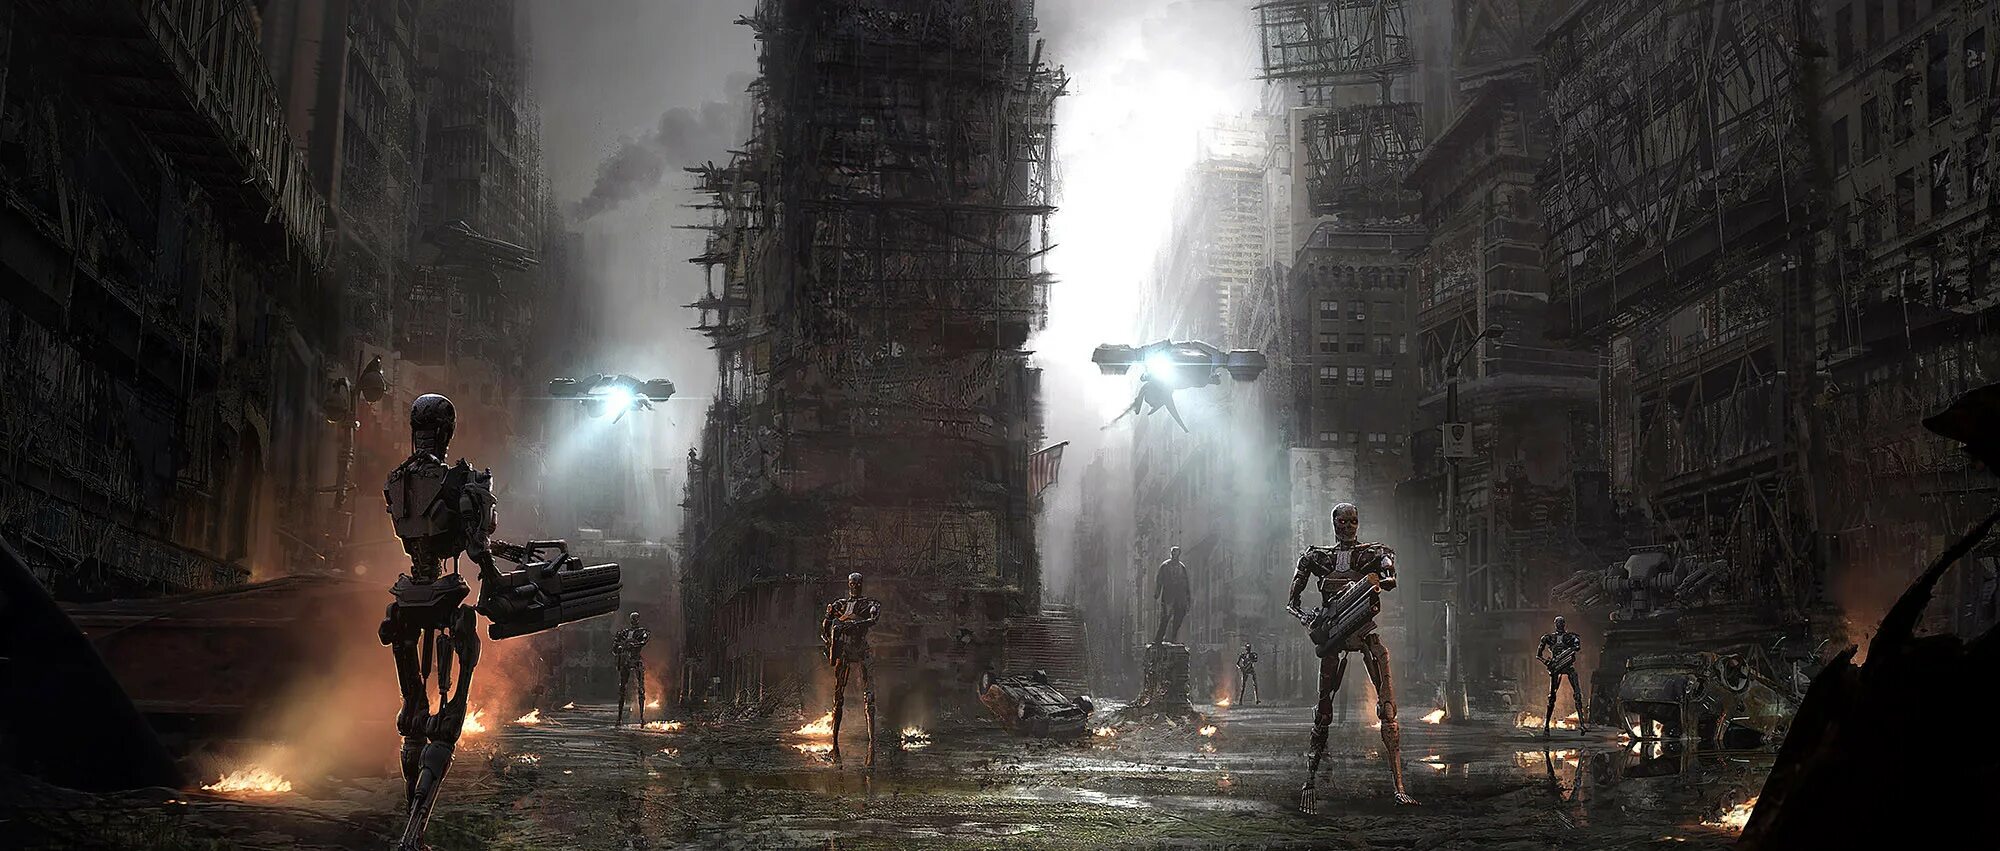 Terminator future. The order 1886 город. Разрушенный город киберпанк. Антиутопия роботы.